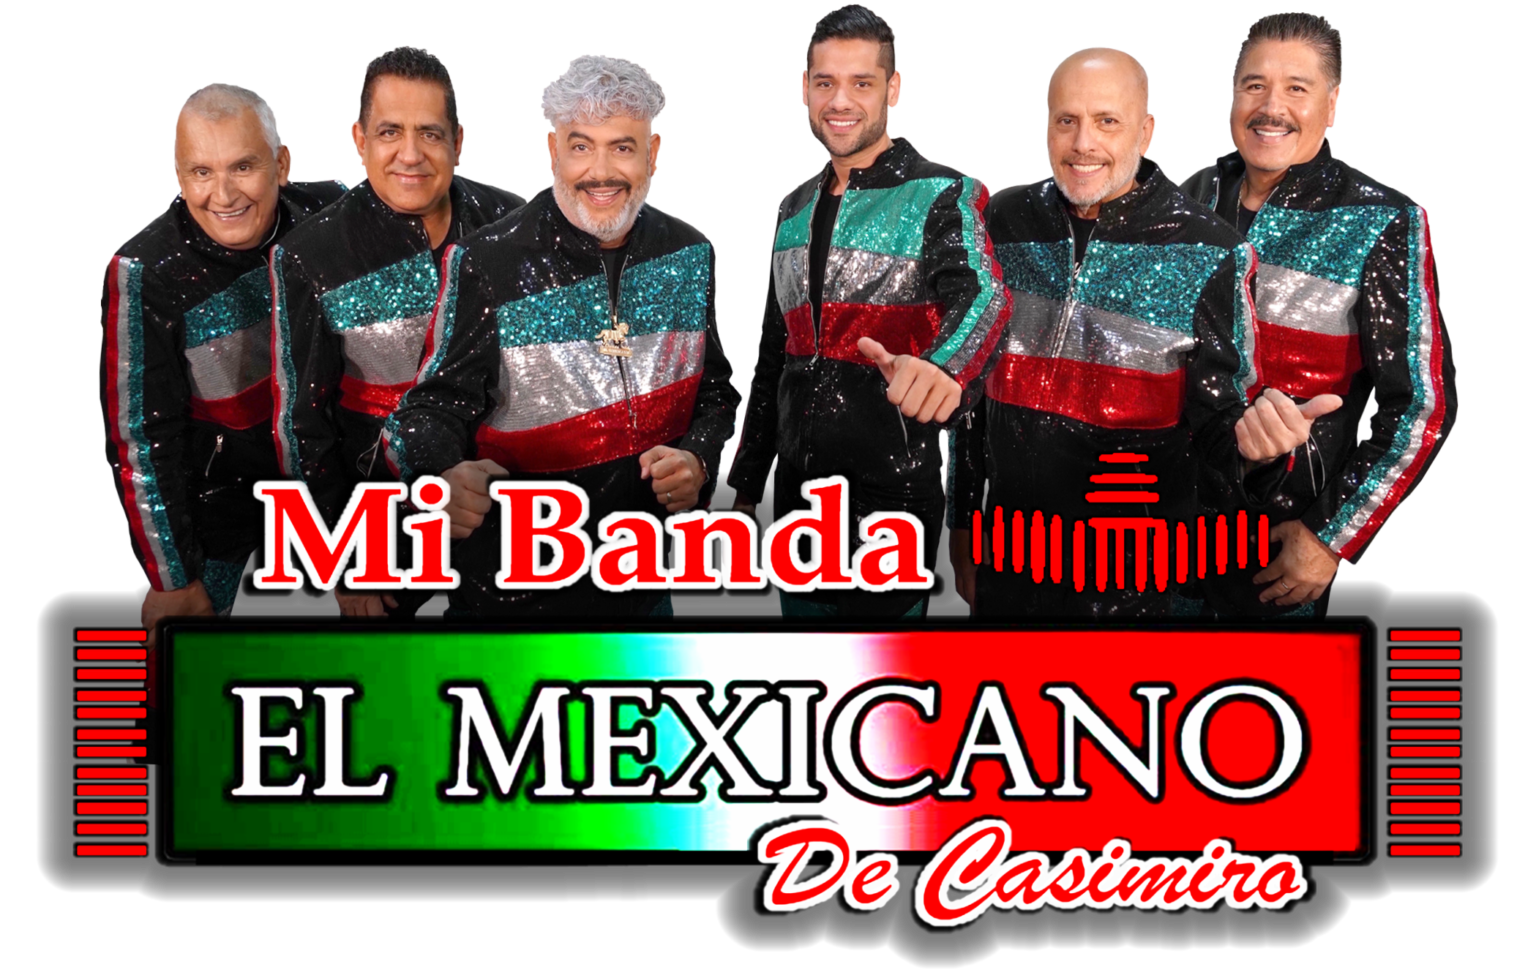 Mi Banda el Mexicano de Casimiro Zamudio Merced Community Calendar